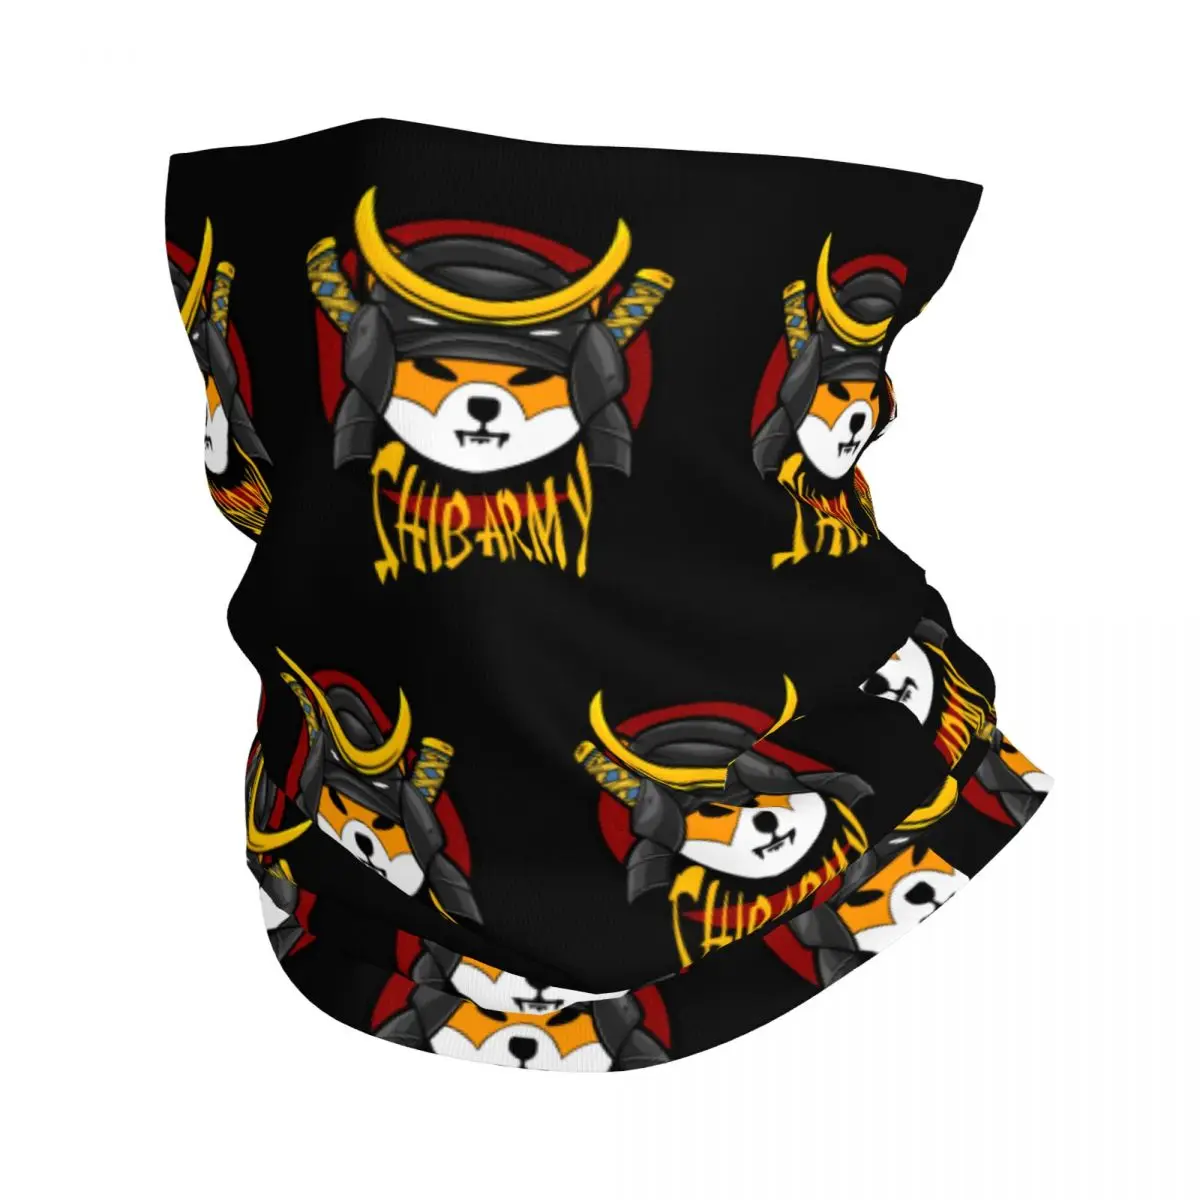 

Shib Army Shiba Inu Coin Bandana Neck Cover SHIB Token Doge Crypto Coin Japanese Samurai Mask Scarf Headwear Running Unisex